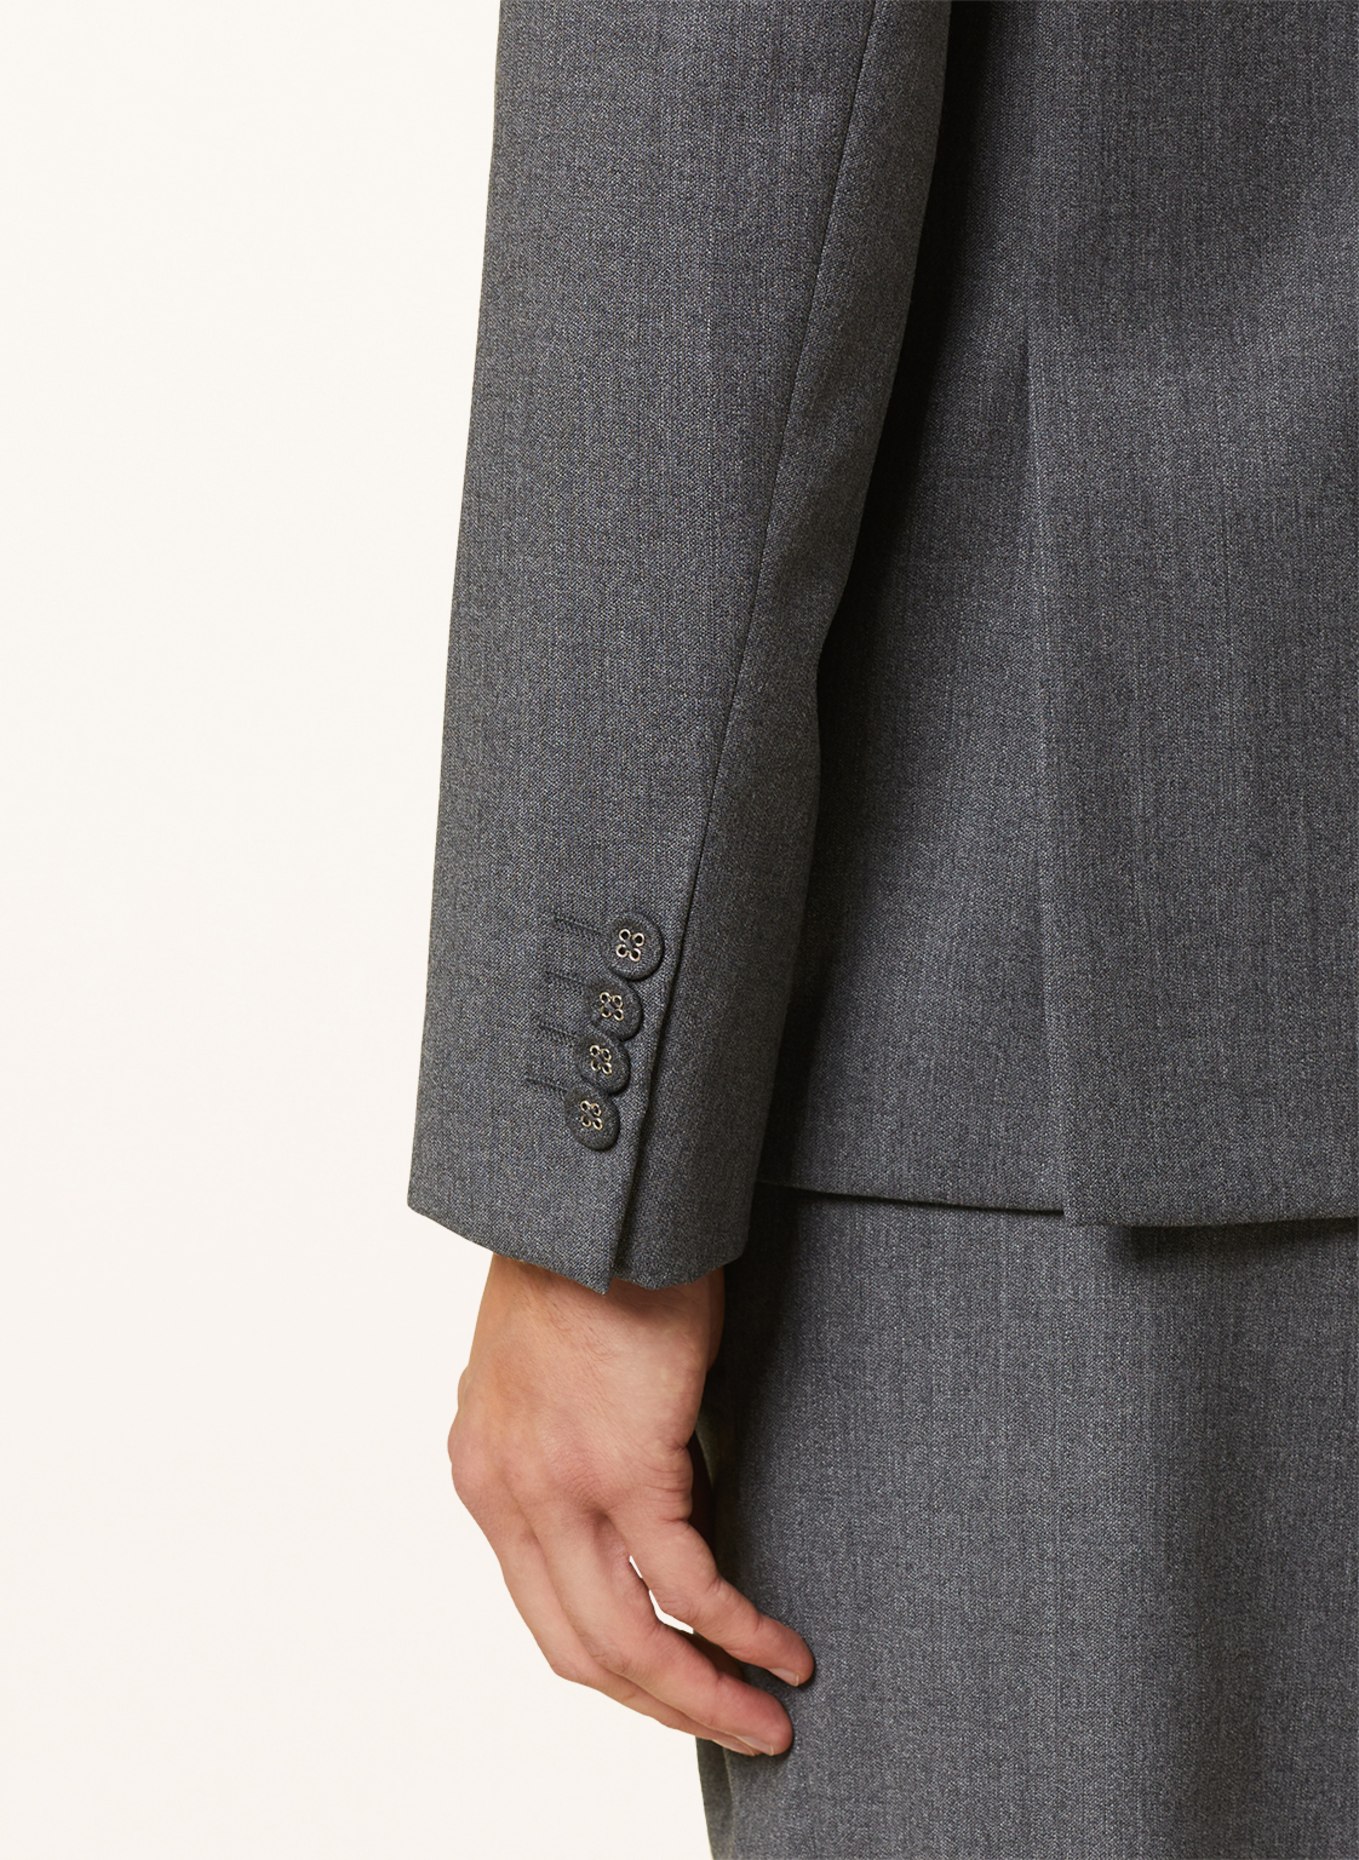 Officine Générale Suit jacket ARTHUS regular fit, Color: MIDGREY (Image 6)